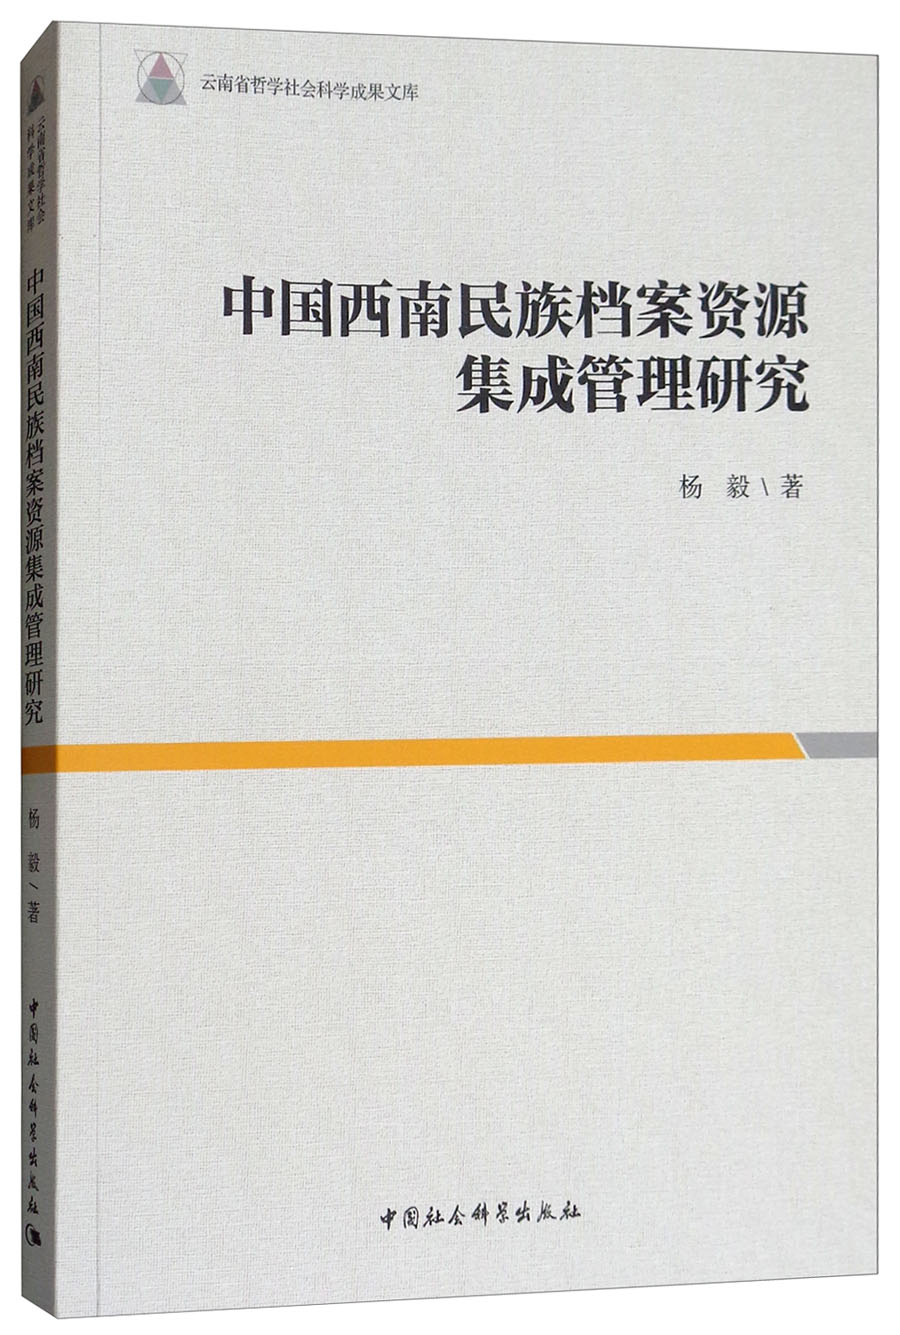 中国西南民族档案资源集成管理研究 中国社会科学 9787520320351 杨毅